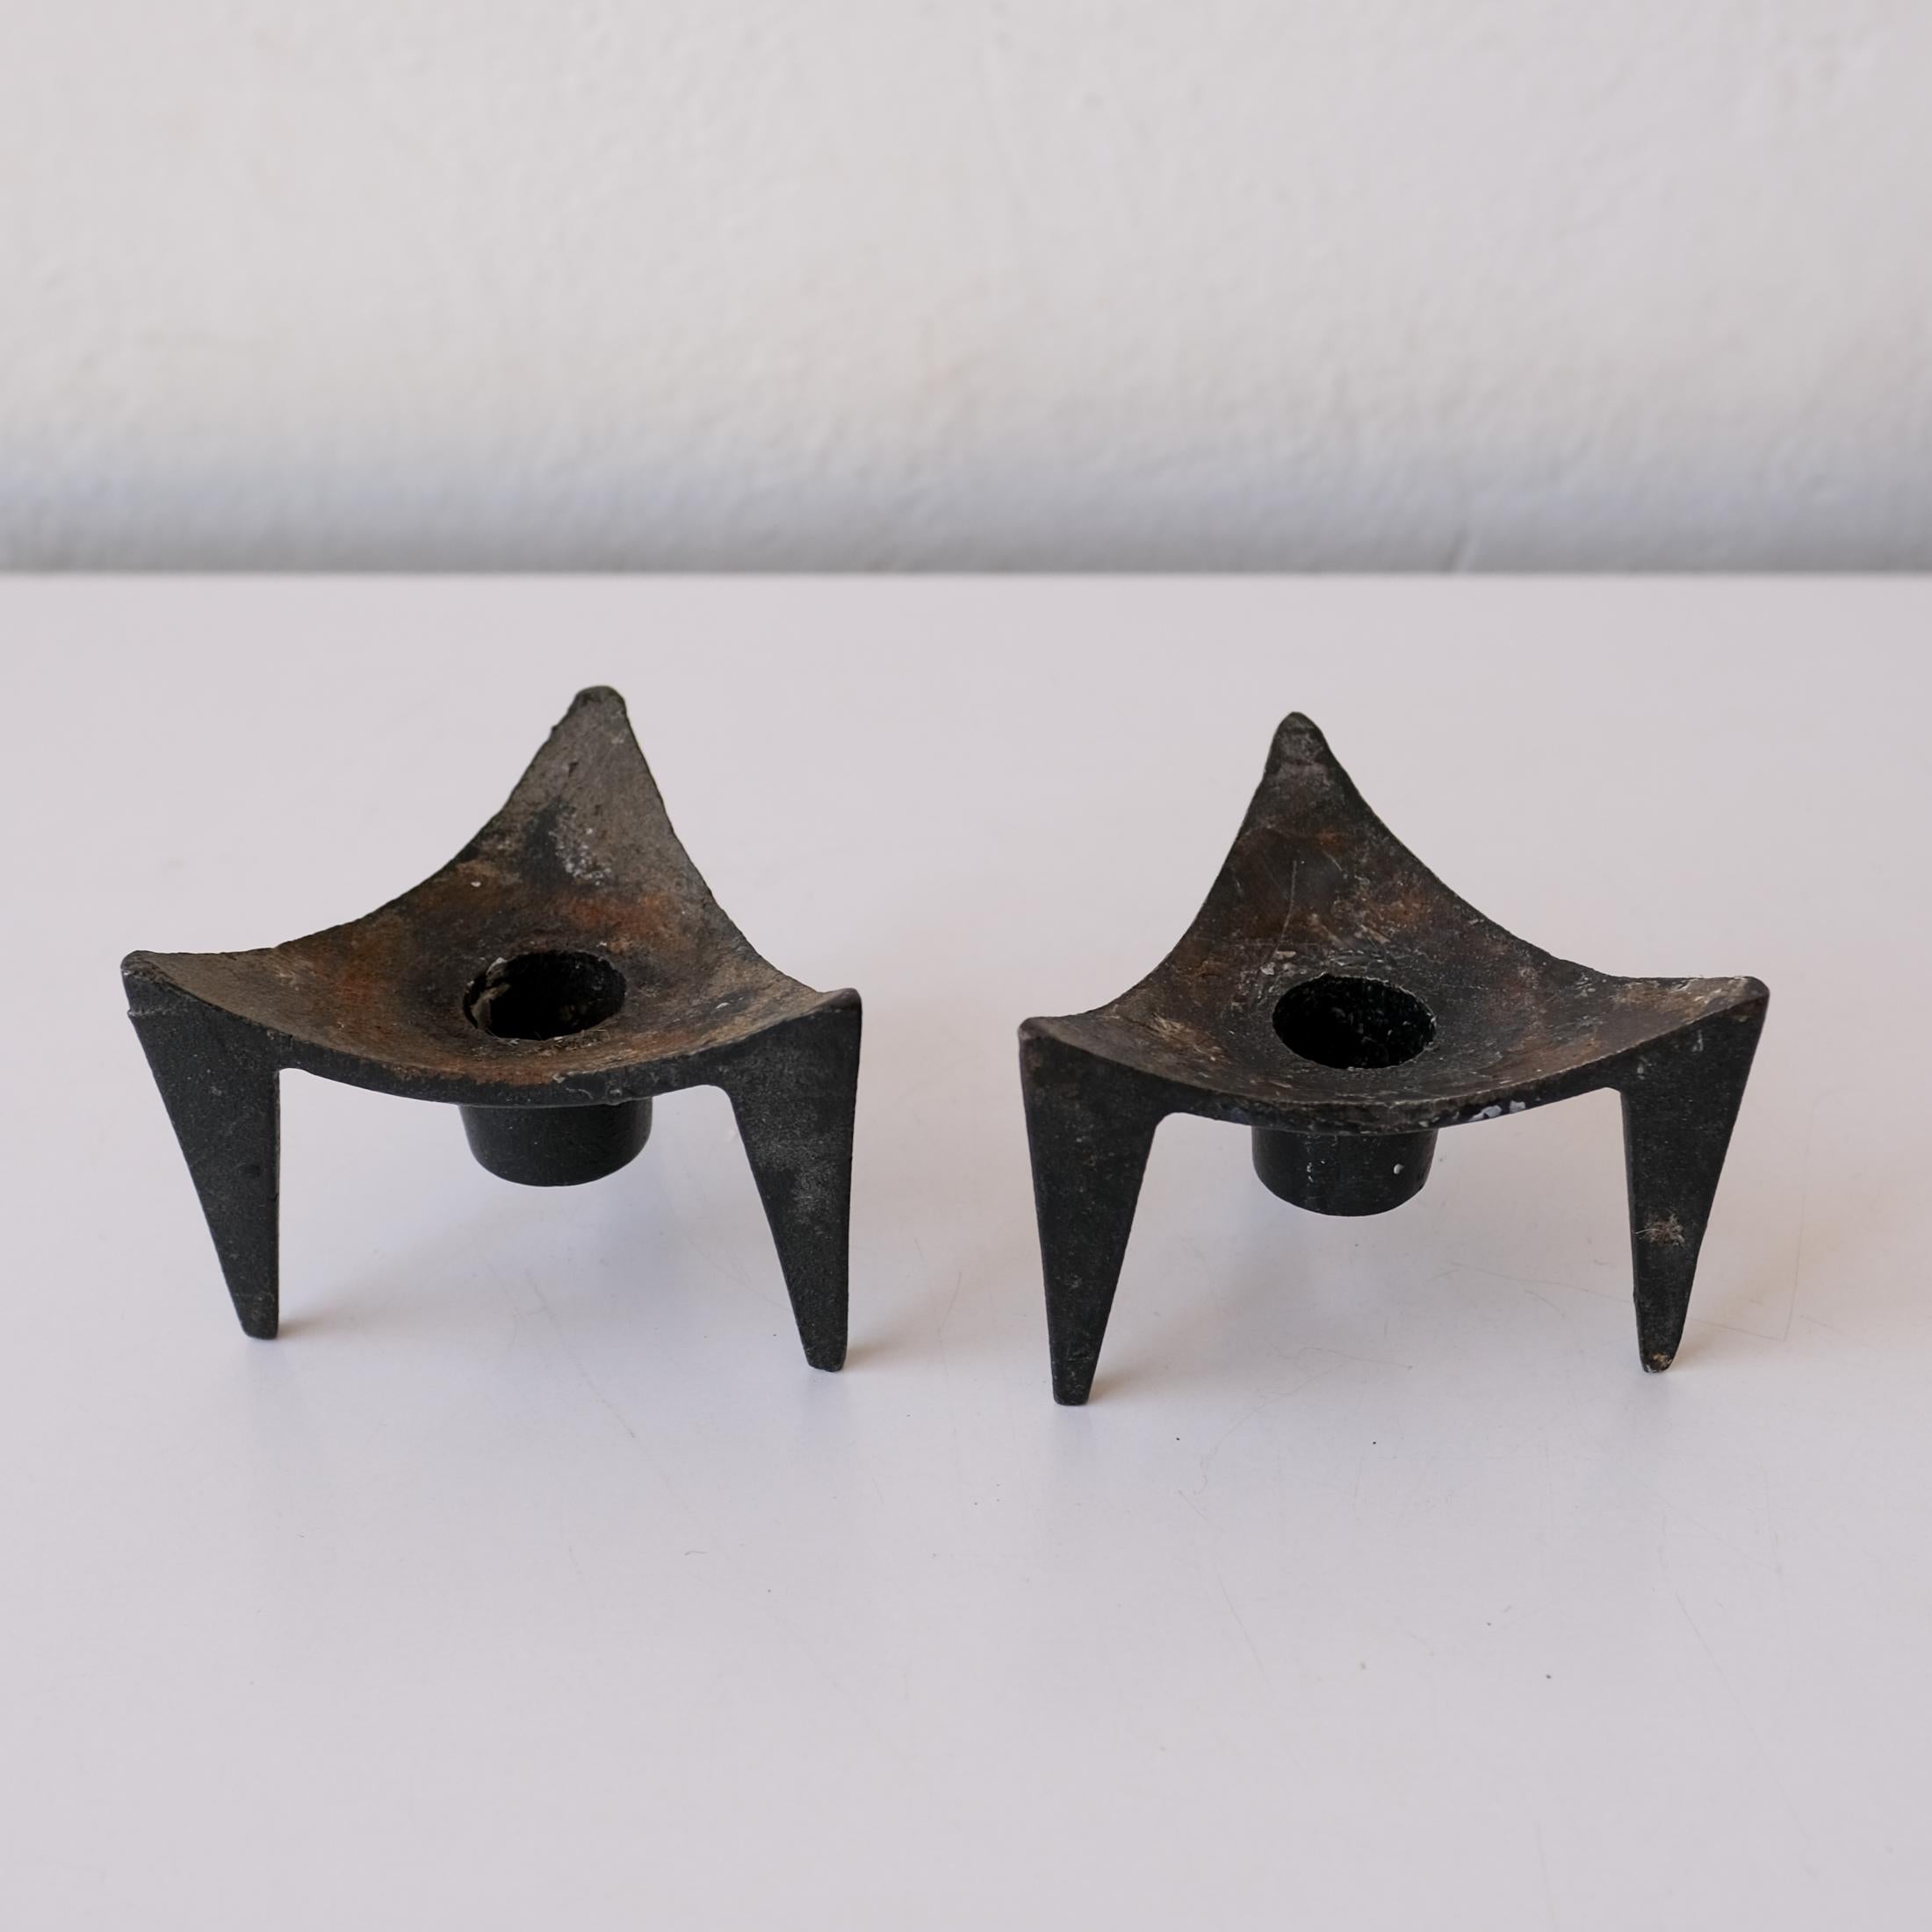 Ein Paar wunderschöne eiserne Kerzenhalter aus Japan. Dreieckige Form, die von einem dreibeinigen Sockel getragen wird. Tolle Patina. 1950s.